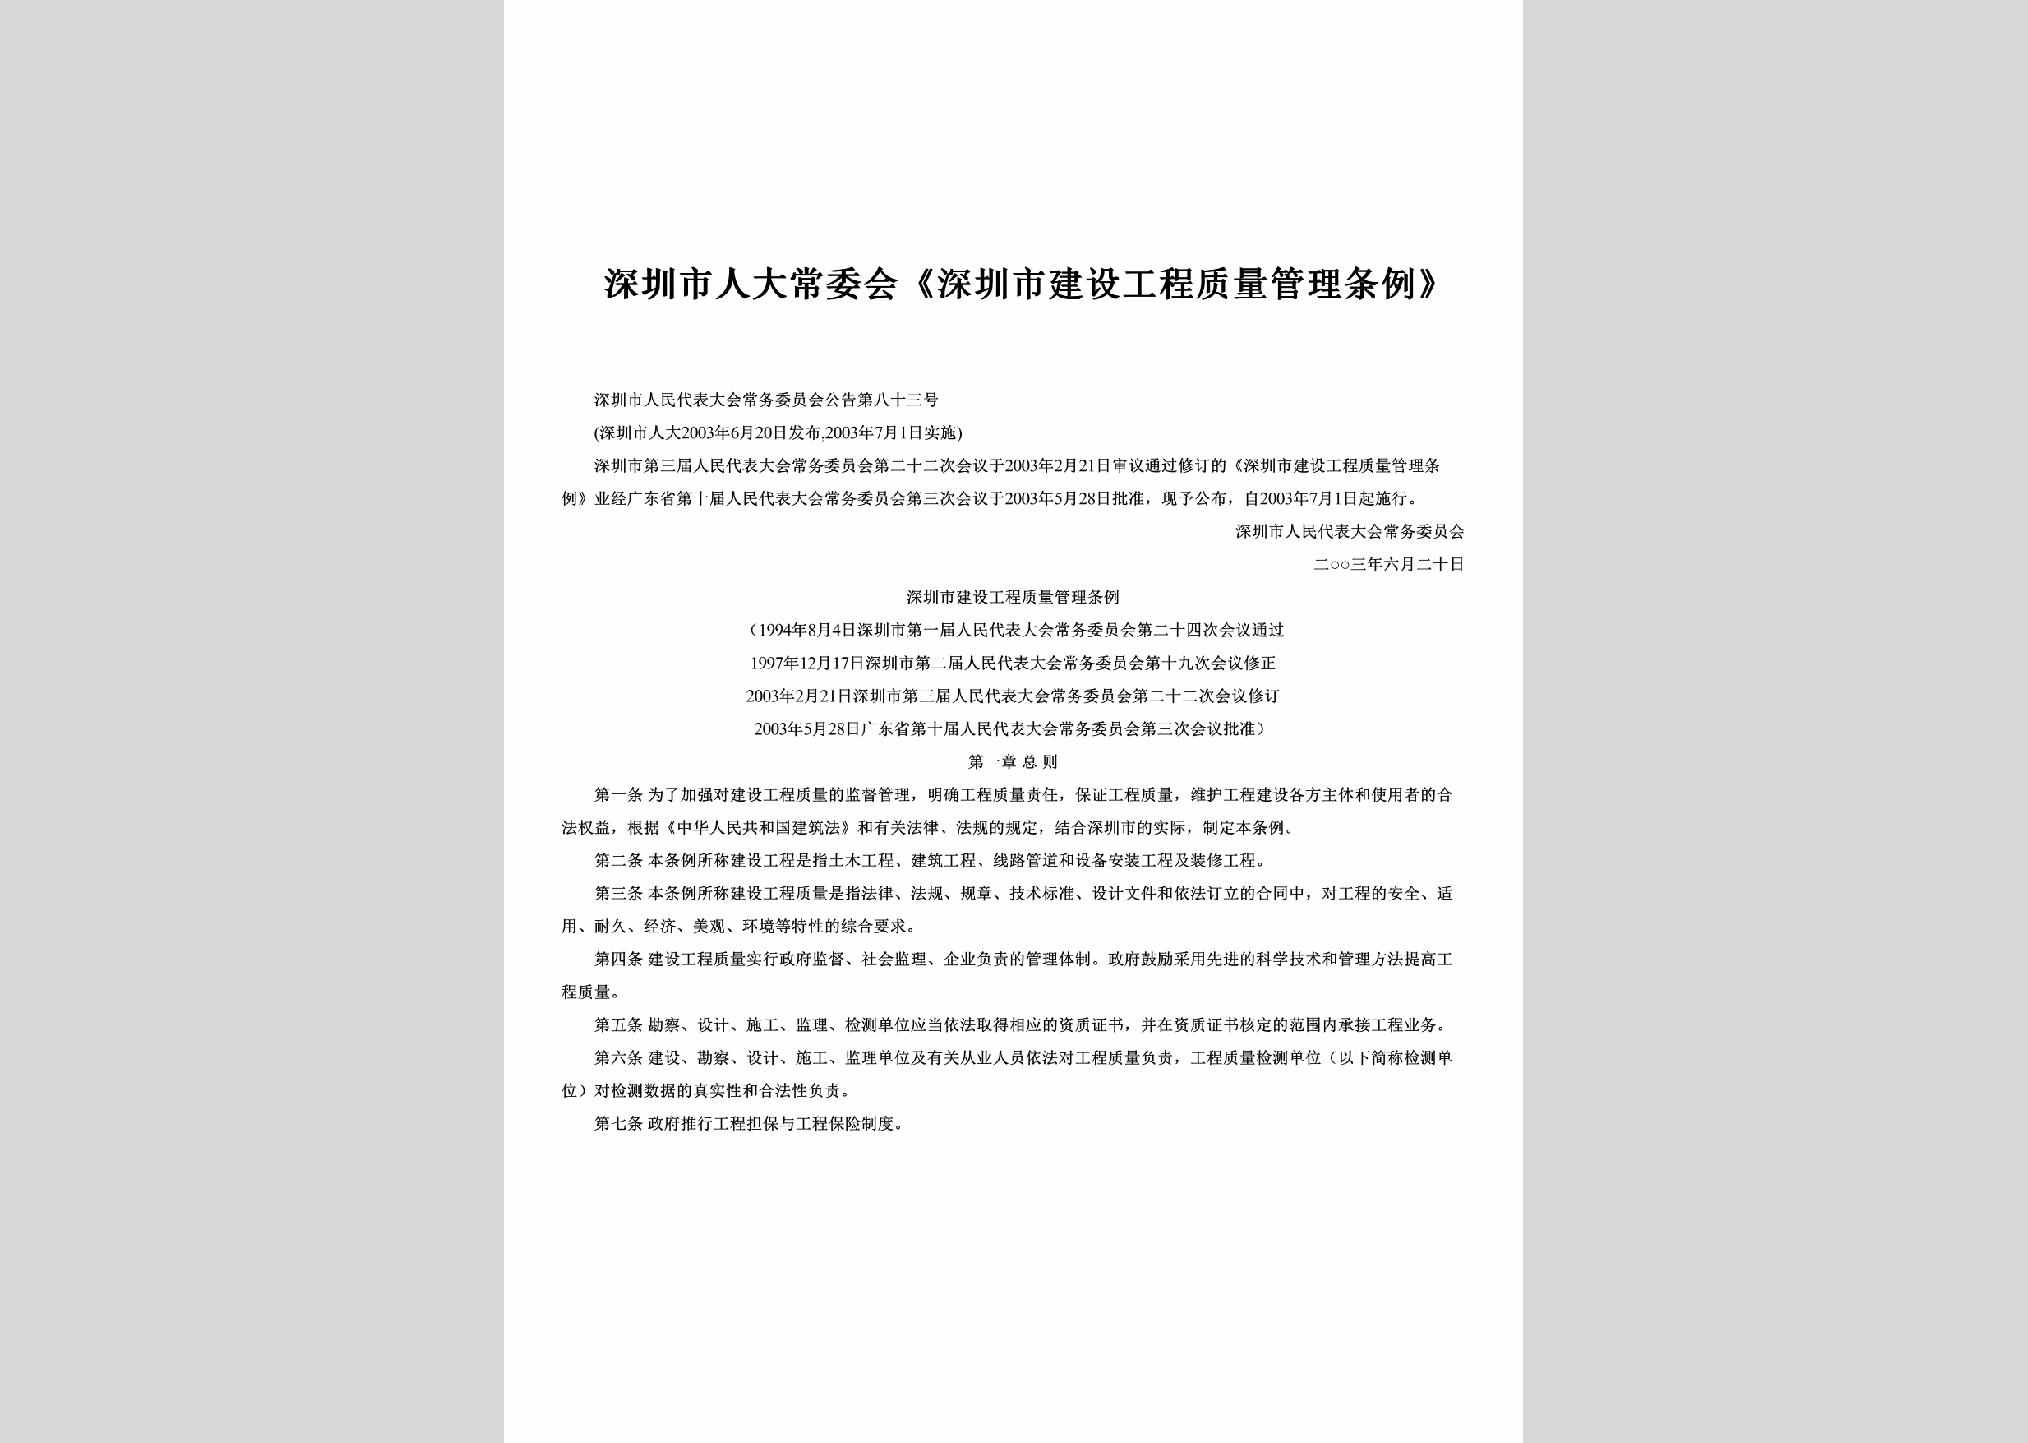 深圳市人民代表大会常务委员会公告第83号：《深圳市建设工程质量管理条例》